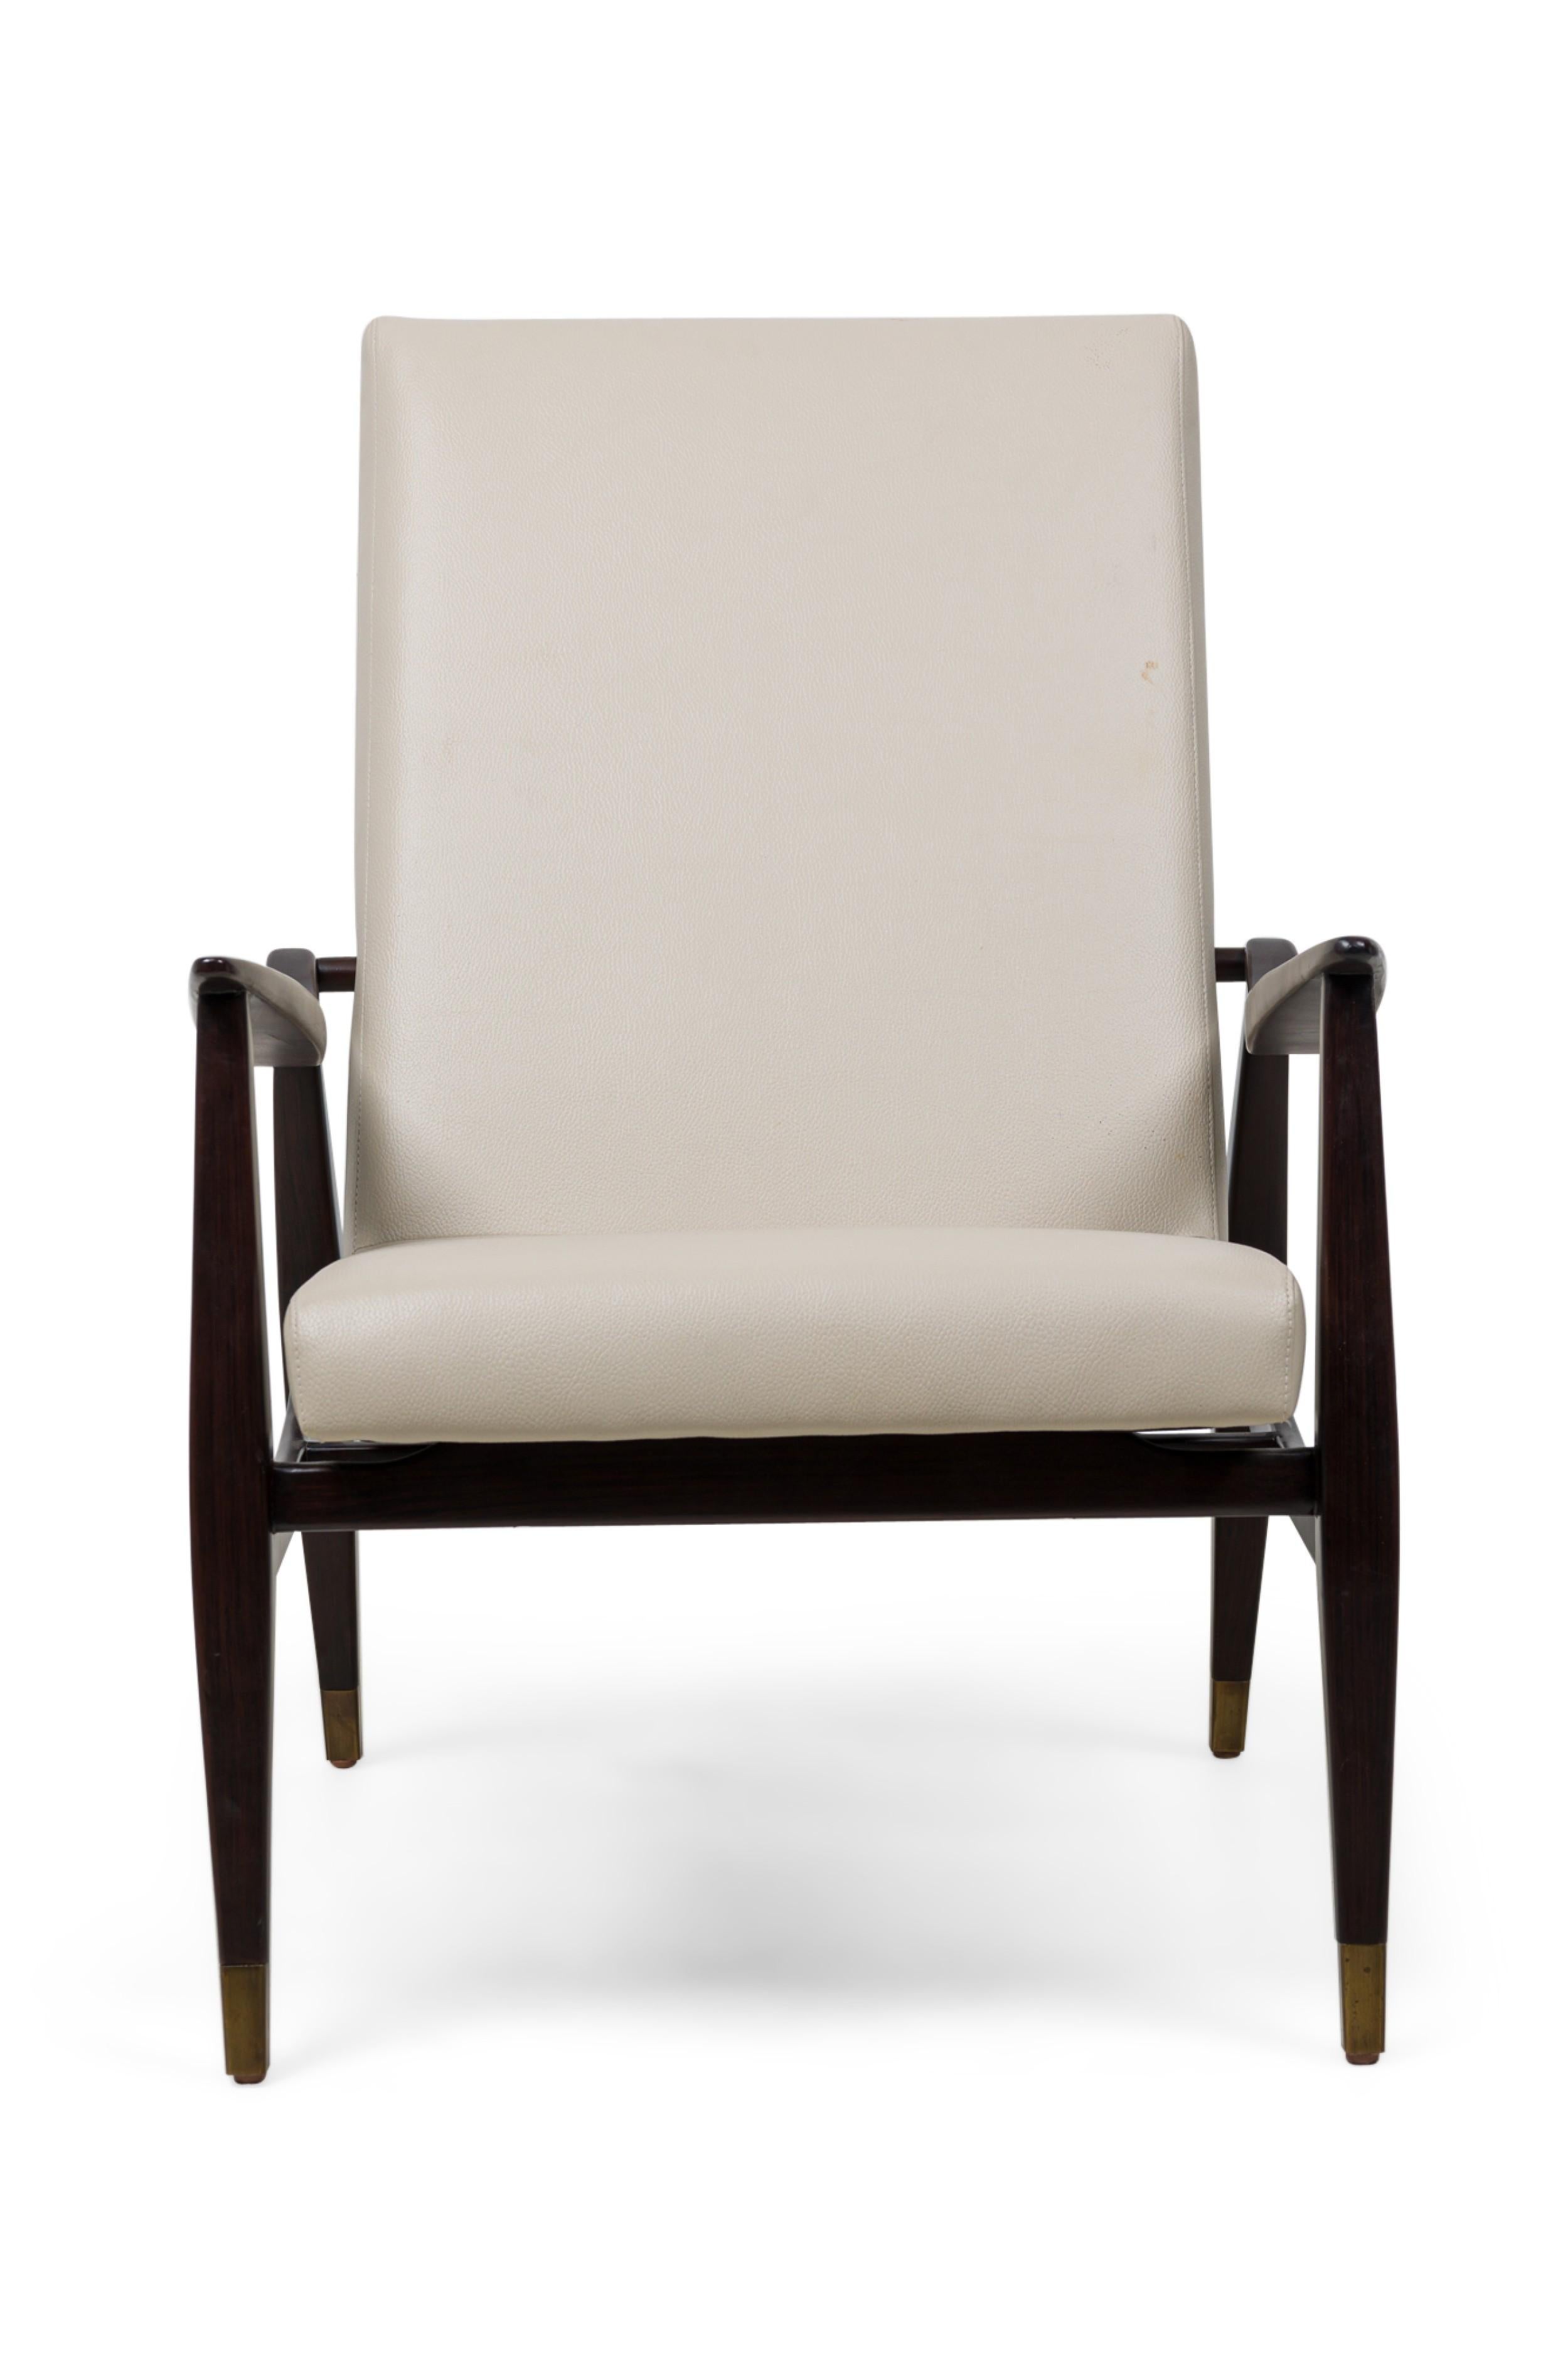 Pärchen zeitgenössischer amerikanischer Sessel mit dunklem Holzrahmen, quadratischer, leicht zurückgelehnter Rückenlehne und verjüngten Armlehnen, gepolstert mit beige/taupefarbenem Kiesel-Leder, auf vier quadratischen, verjüngten Beinen, die in